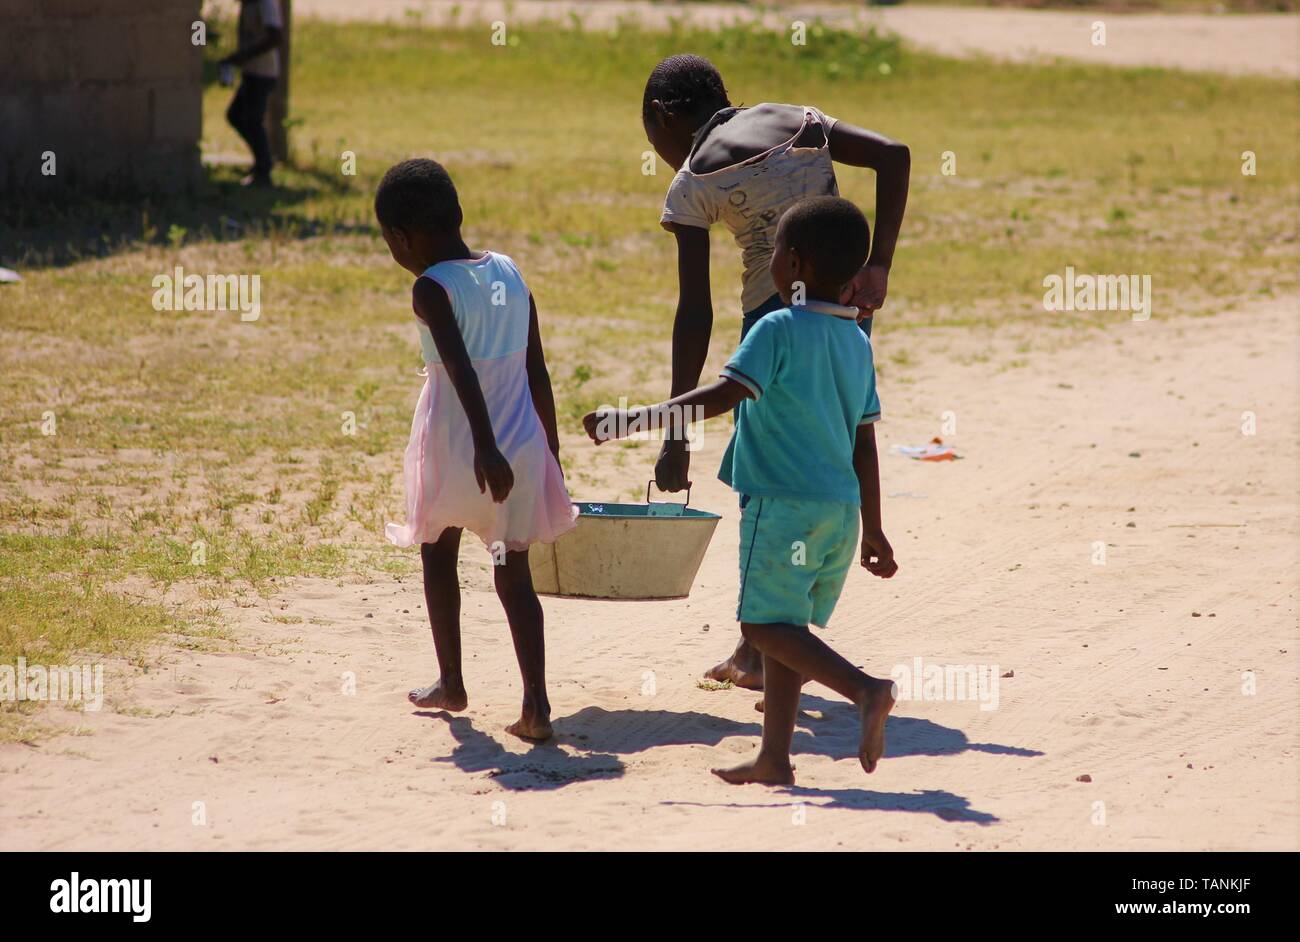 Les jeunes enfants africains transportent l'eau du village d'un robinet d'eau retour à l'accueil pour faire leur lavage. Banque D'Images